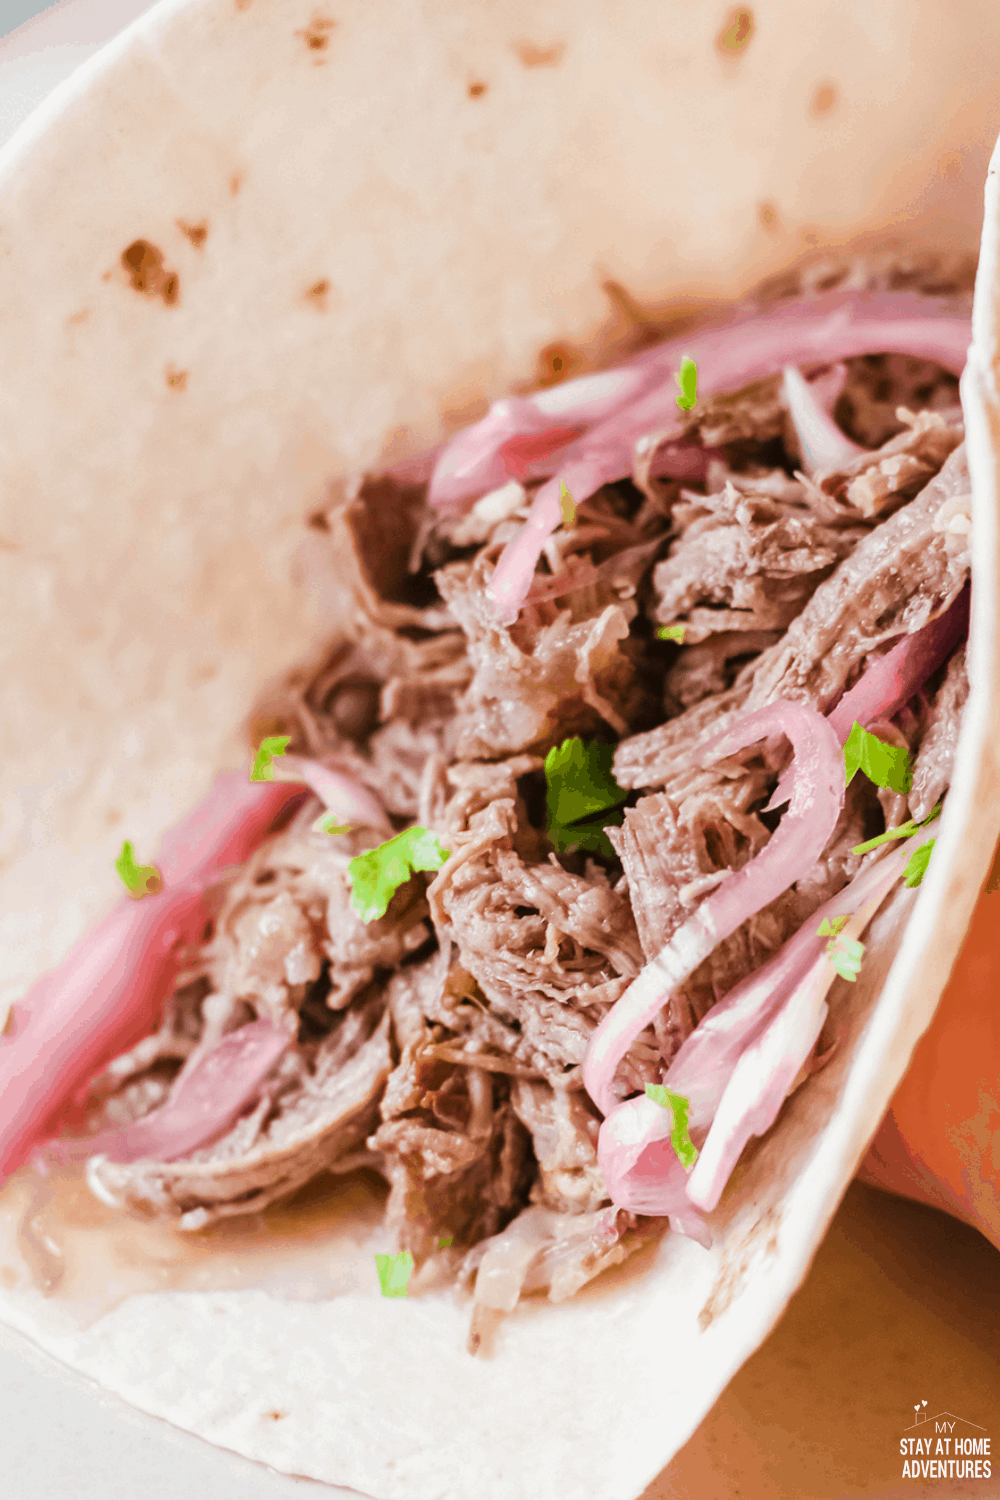 rozdrobnione tacos z wołowiną (tacos de Carne Deshebrada) są delikatne, aromatyczne, niesamowite tacos, o które Twoja rodzina będzie prosić raz po raz. # tacos # tacosdeshebrada # shreddedbeeftacos # tacotuesday via @ mystayathome